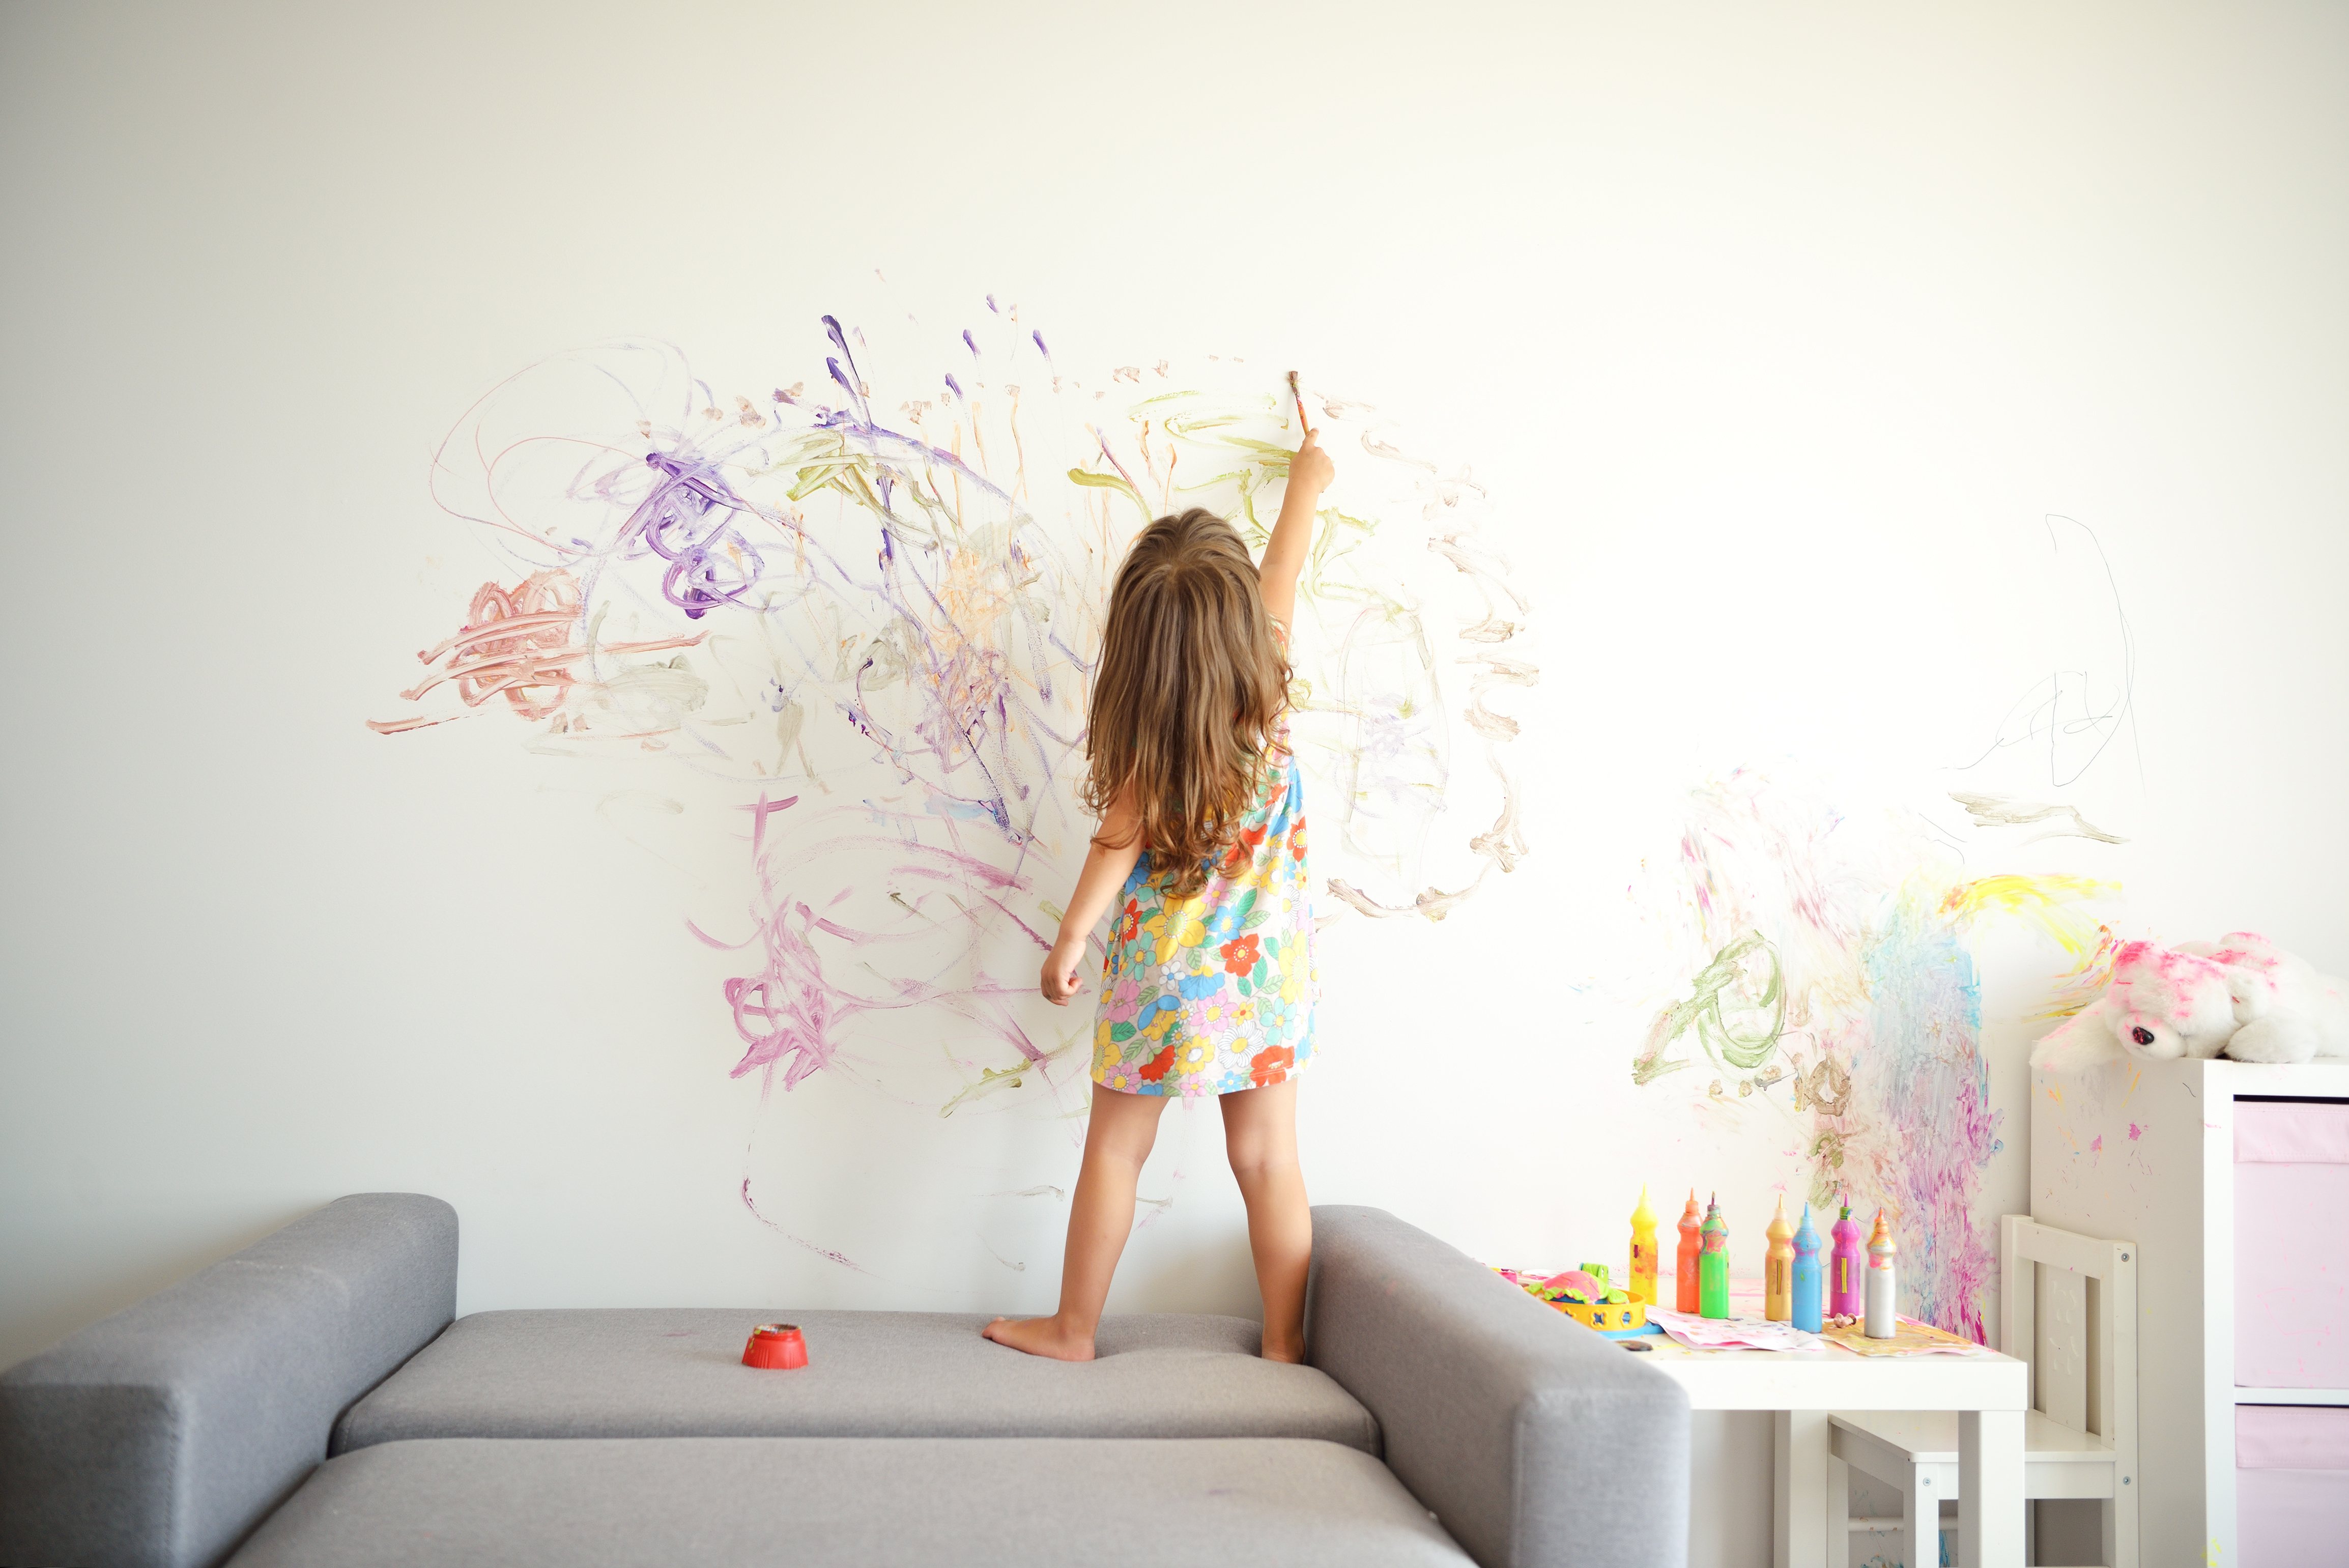 Une petite fille qui dessine sur les murs | Source : Shutterstock